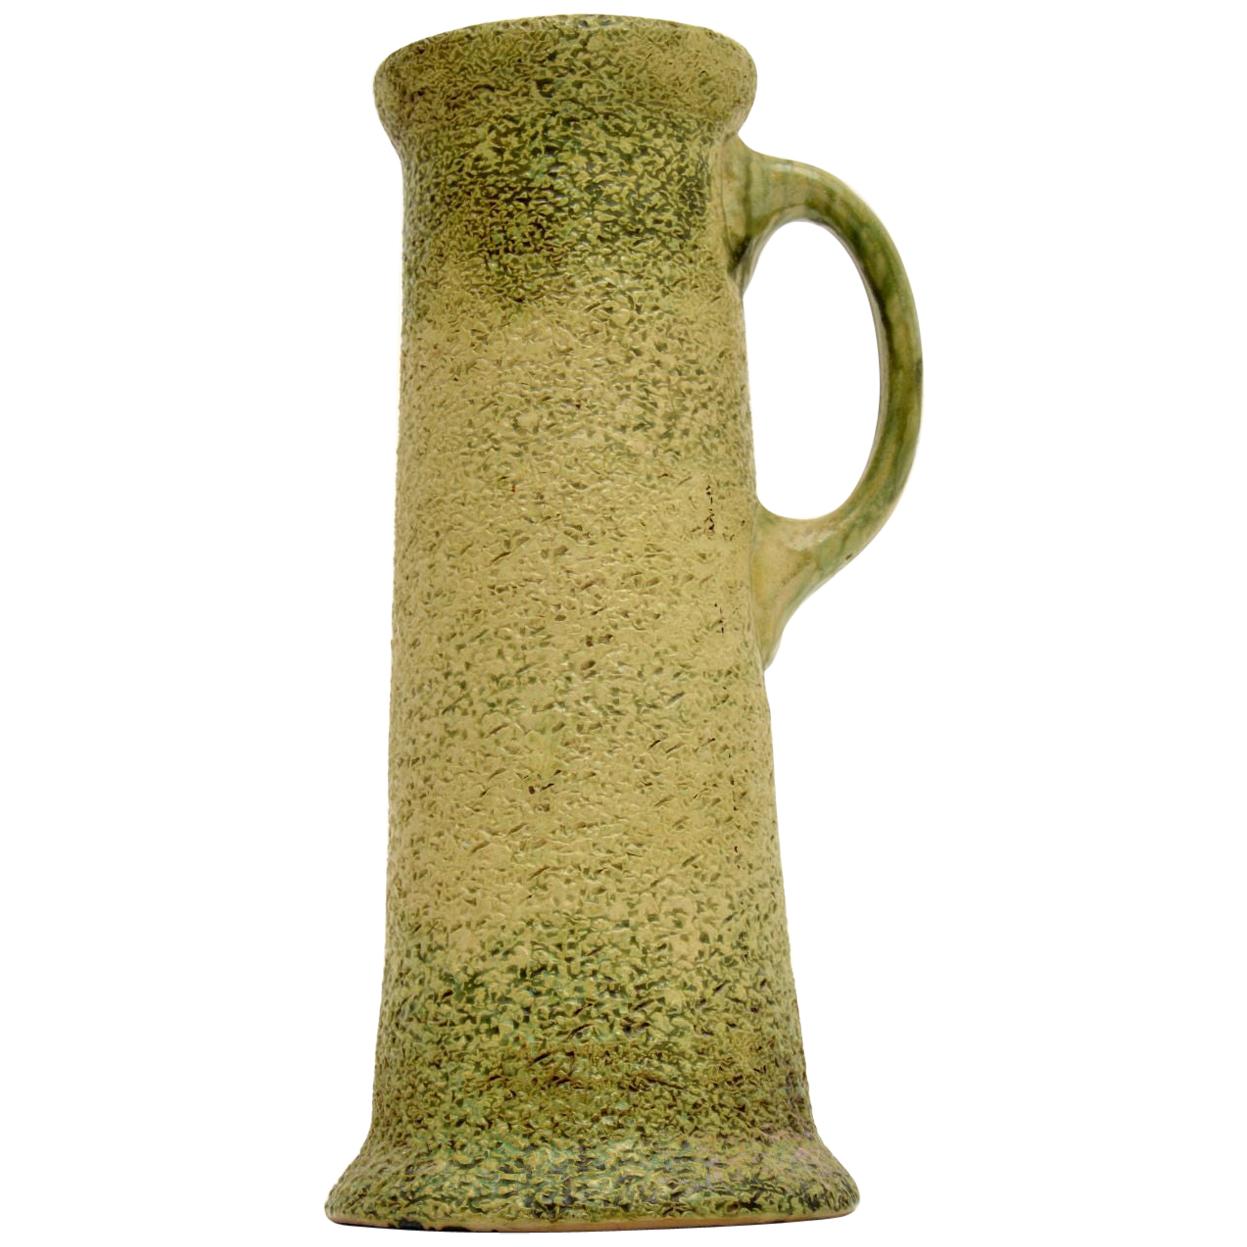 Large Vintage Glazed Ceramic Pitcher / Vase